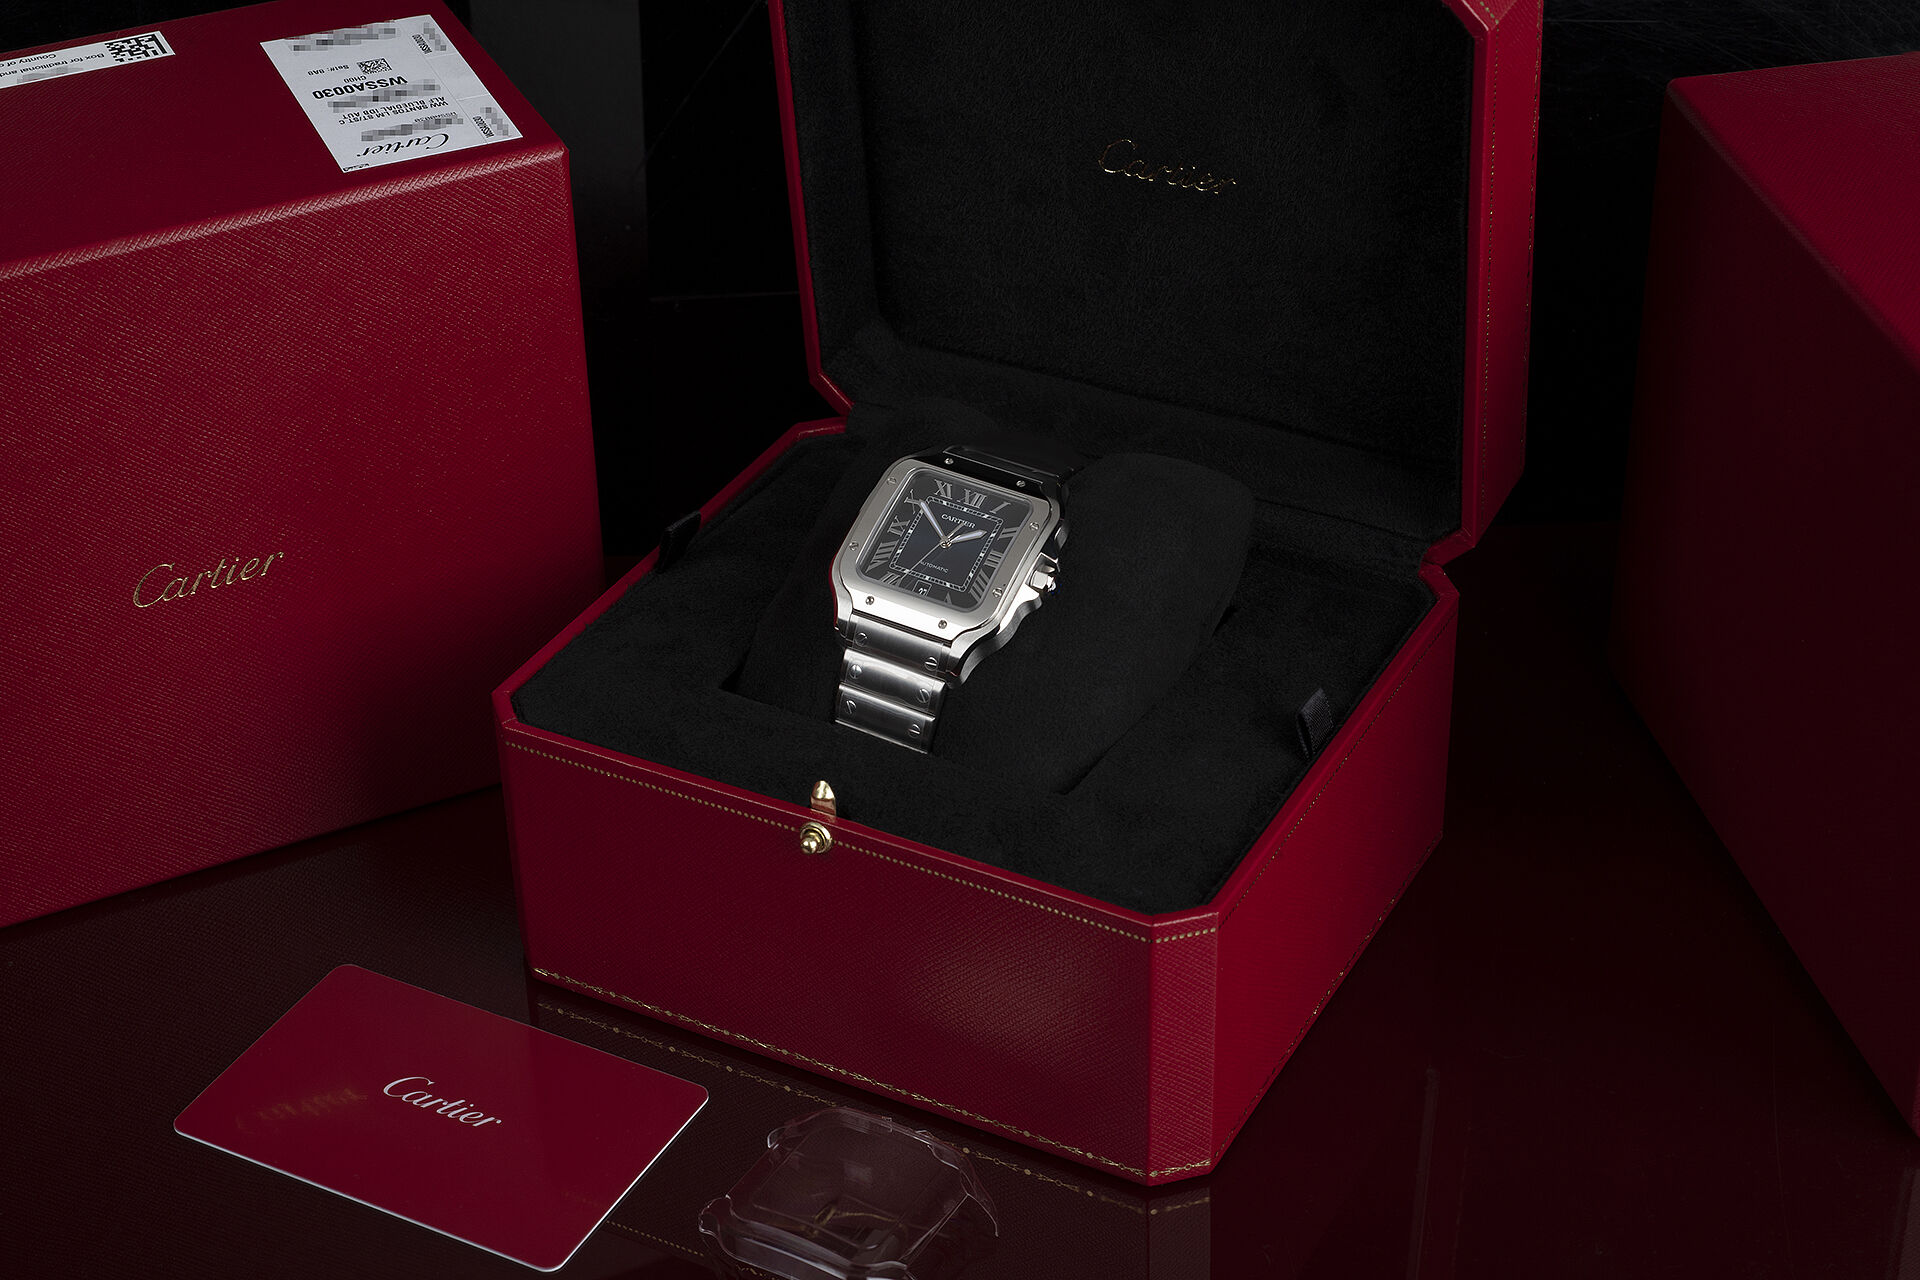 ref WSSA0030 | Brand New, Under Cartier Warranty | Cartier Santos 100